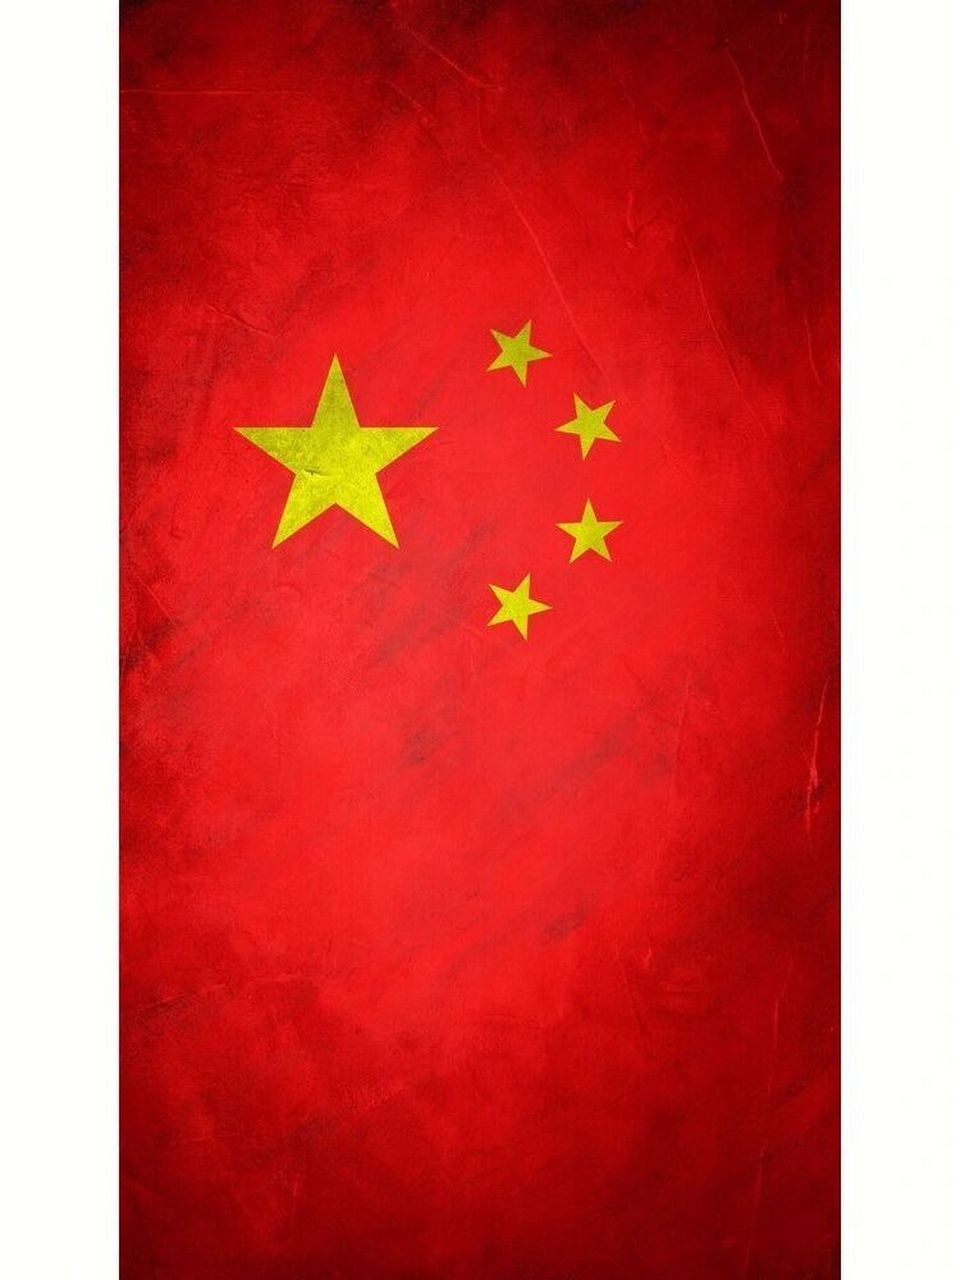 国庆日主题手机壁纸 《红旗飘飘》